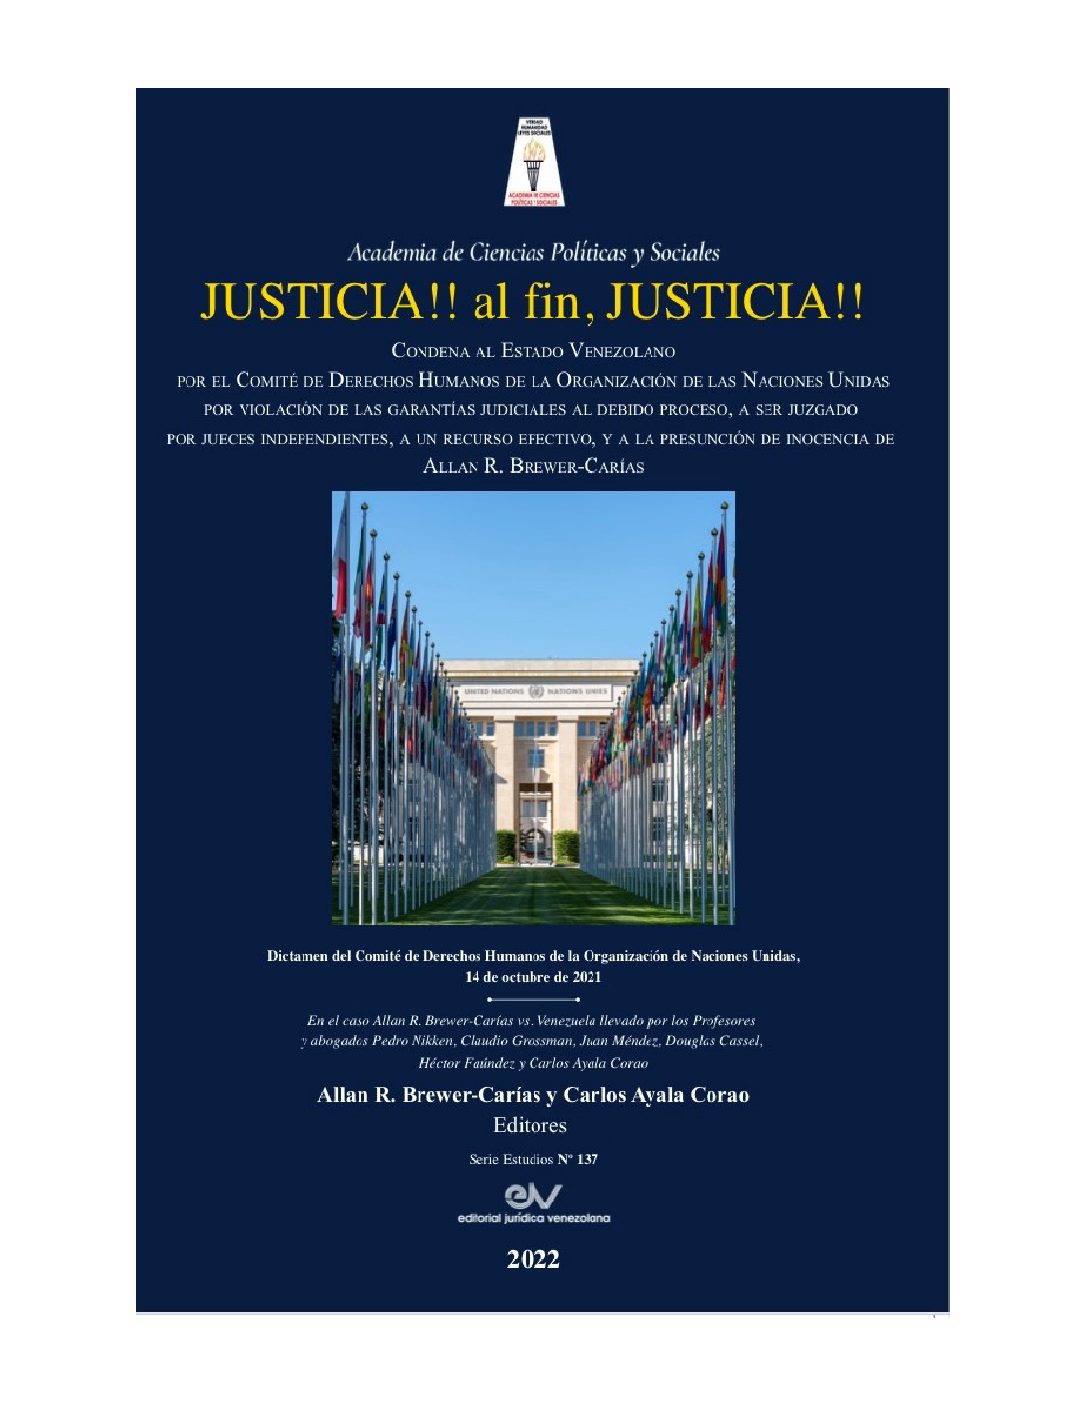 Disponible a texto completo el libro: Justicia !! Al fin, justicia !! La condena internacional al Estado de Venezuela en el caso Allan R. Brewer-Carías vs. Venezuela